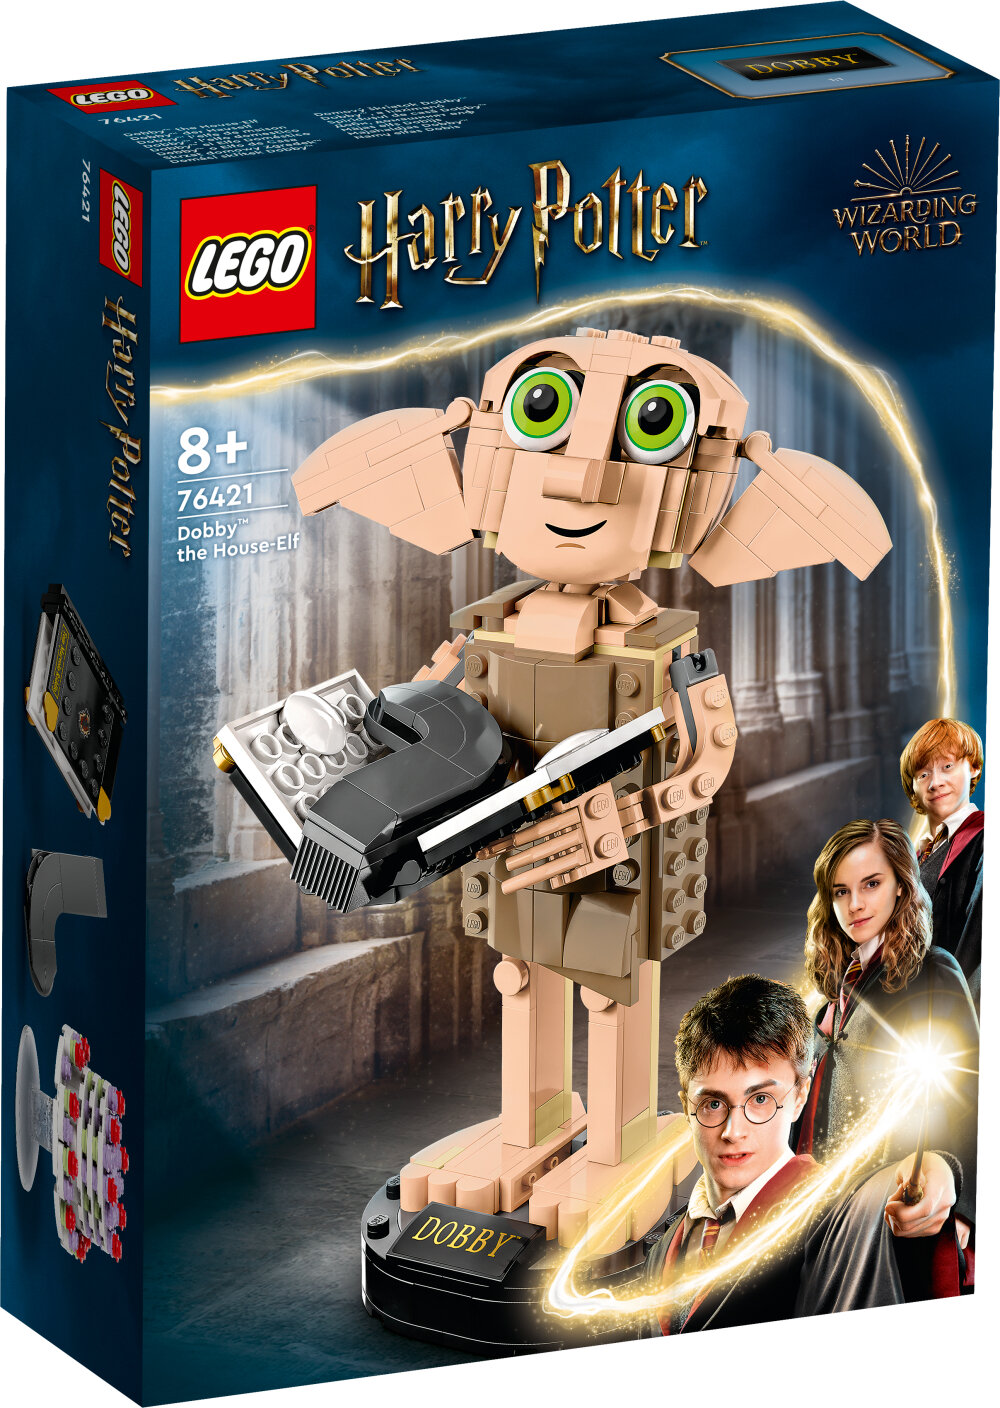 LEGO Harry Potter - Husalfen Dobby 8+